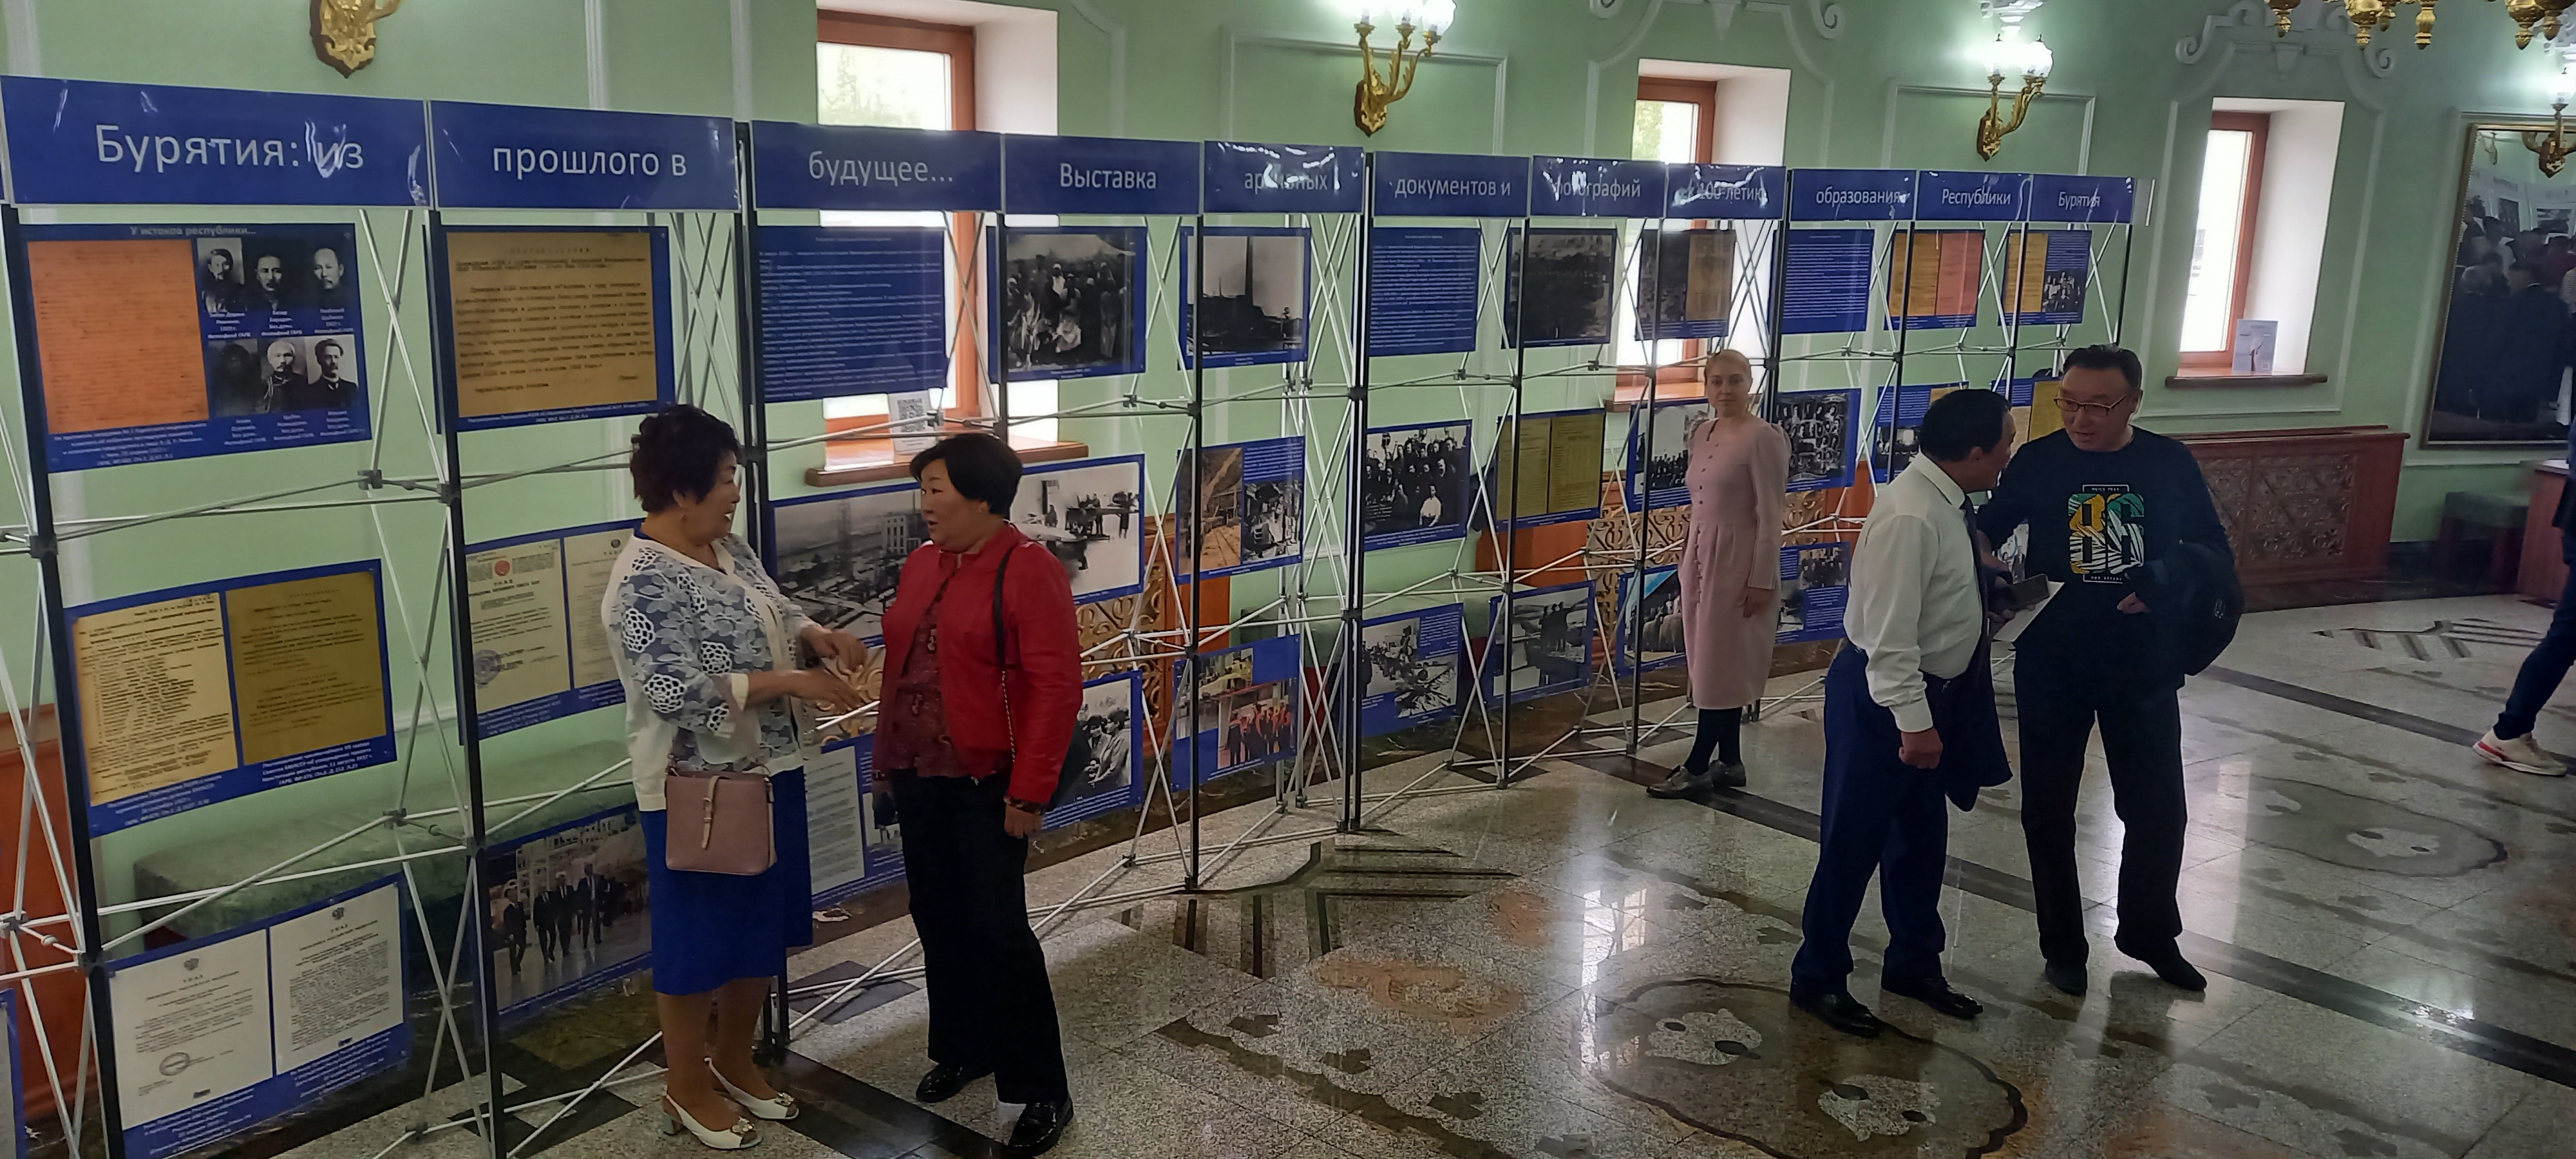 Госархив представил выставку, посвященную 100-летию Республики Бурятия